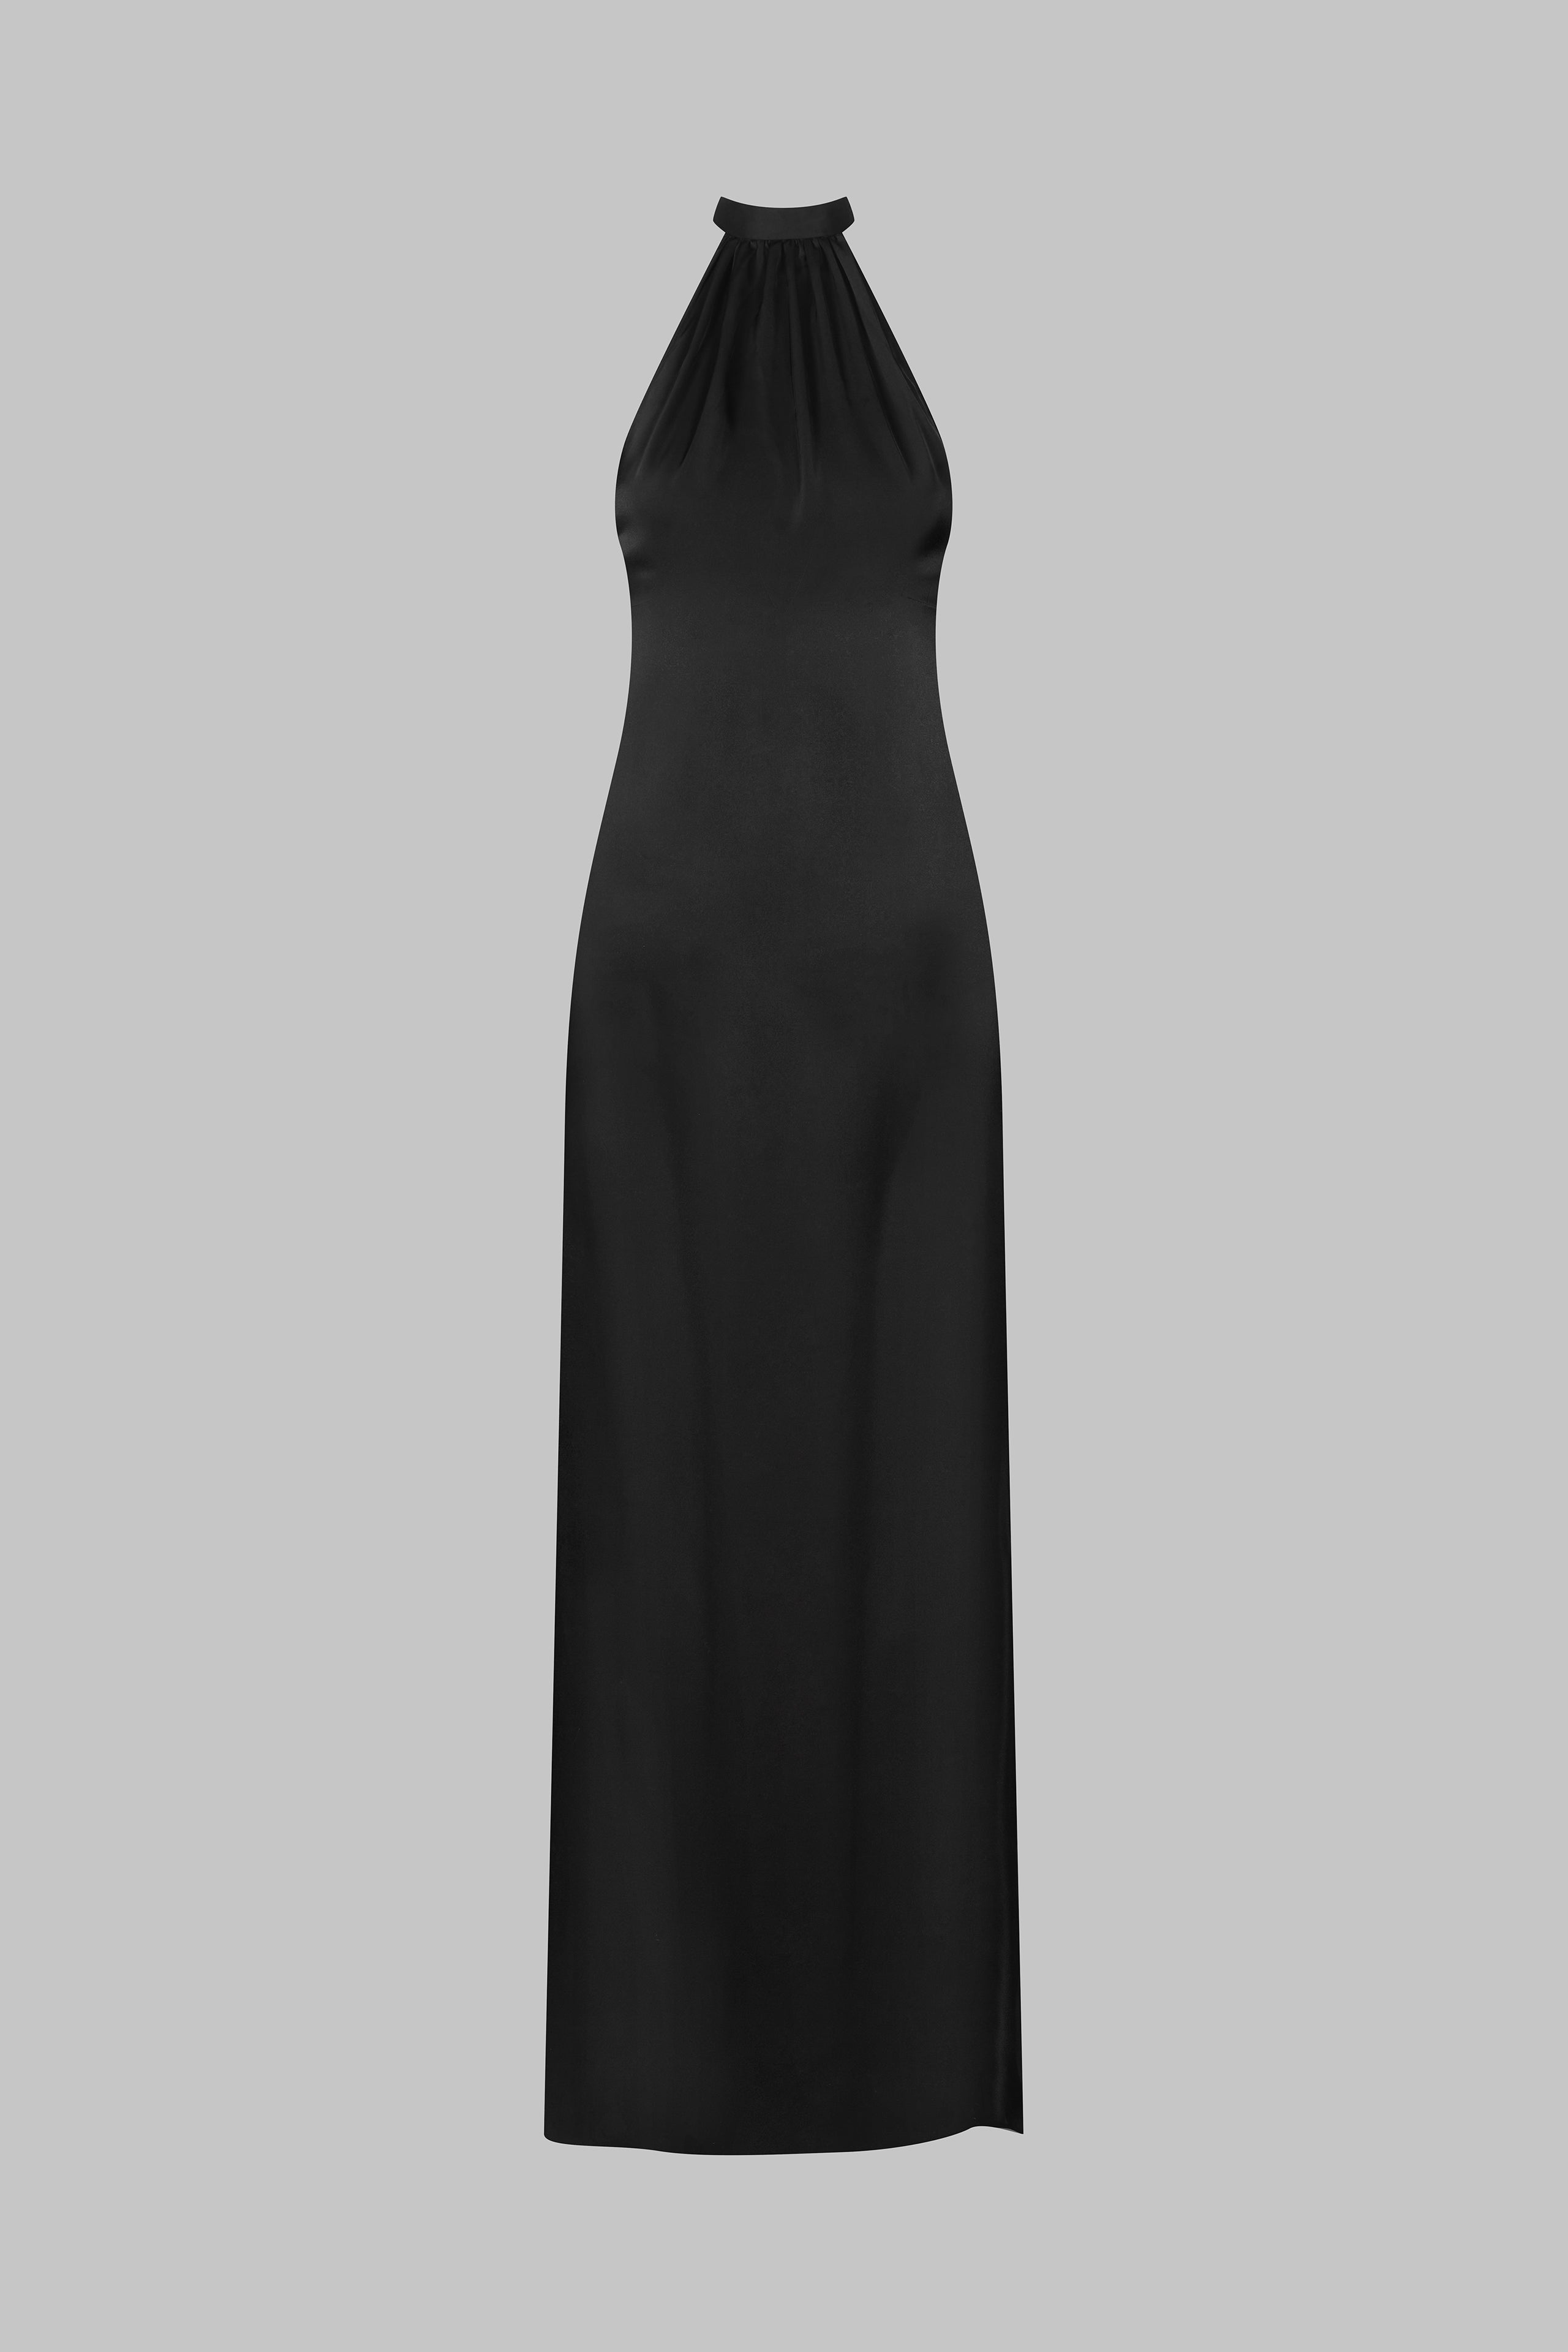 017 - Langes, rückenfreies Kleid aus Satin mit amerikanischem Ausschnitt